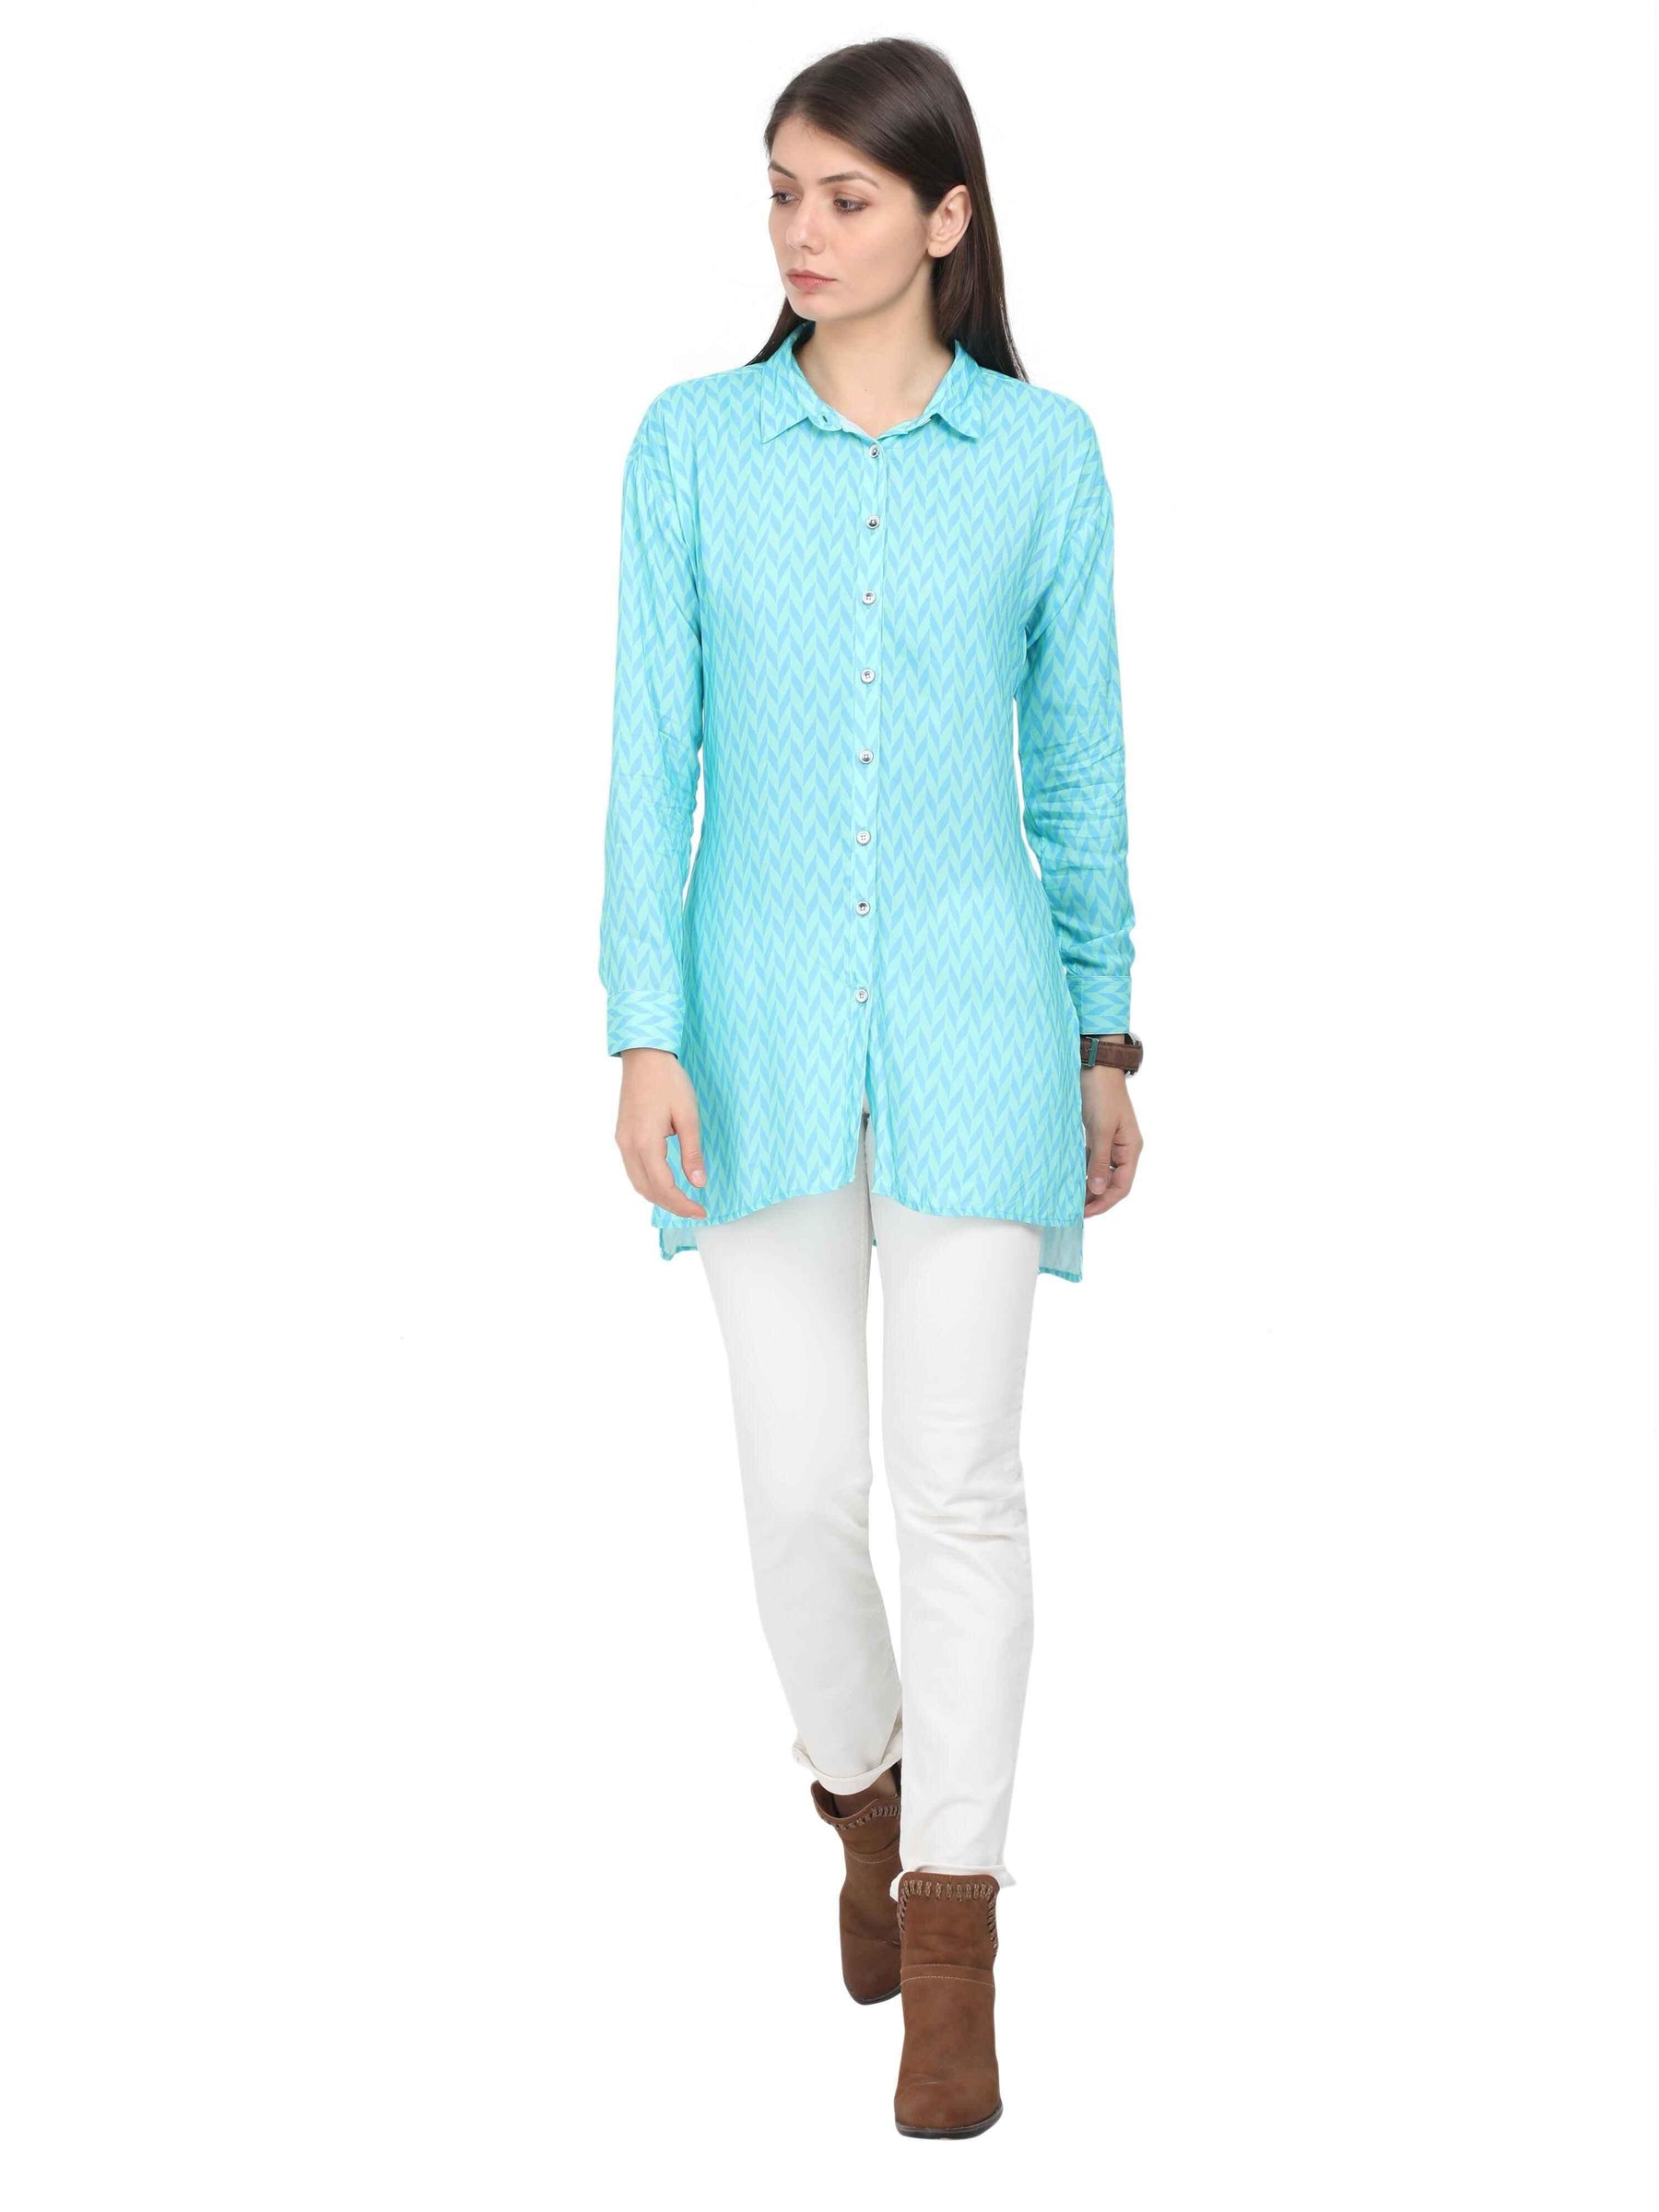 Multi-Colour Digital Printed Taiored Fit Long Shirt - Guniaa Fashions